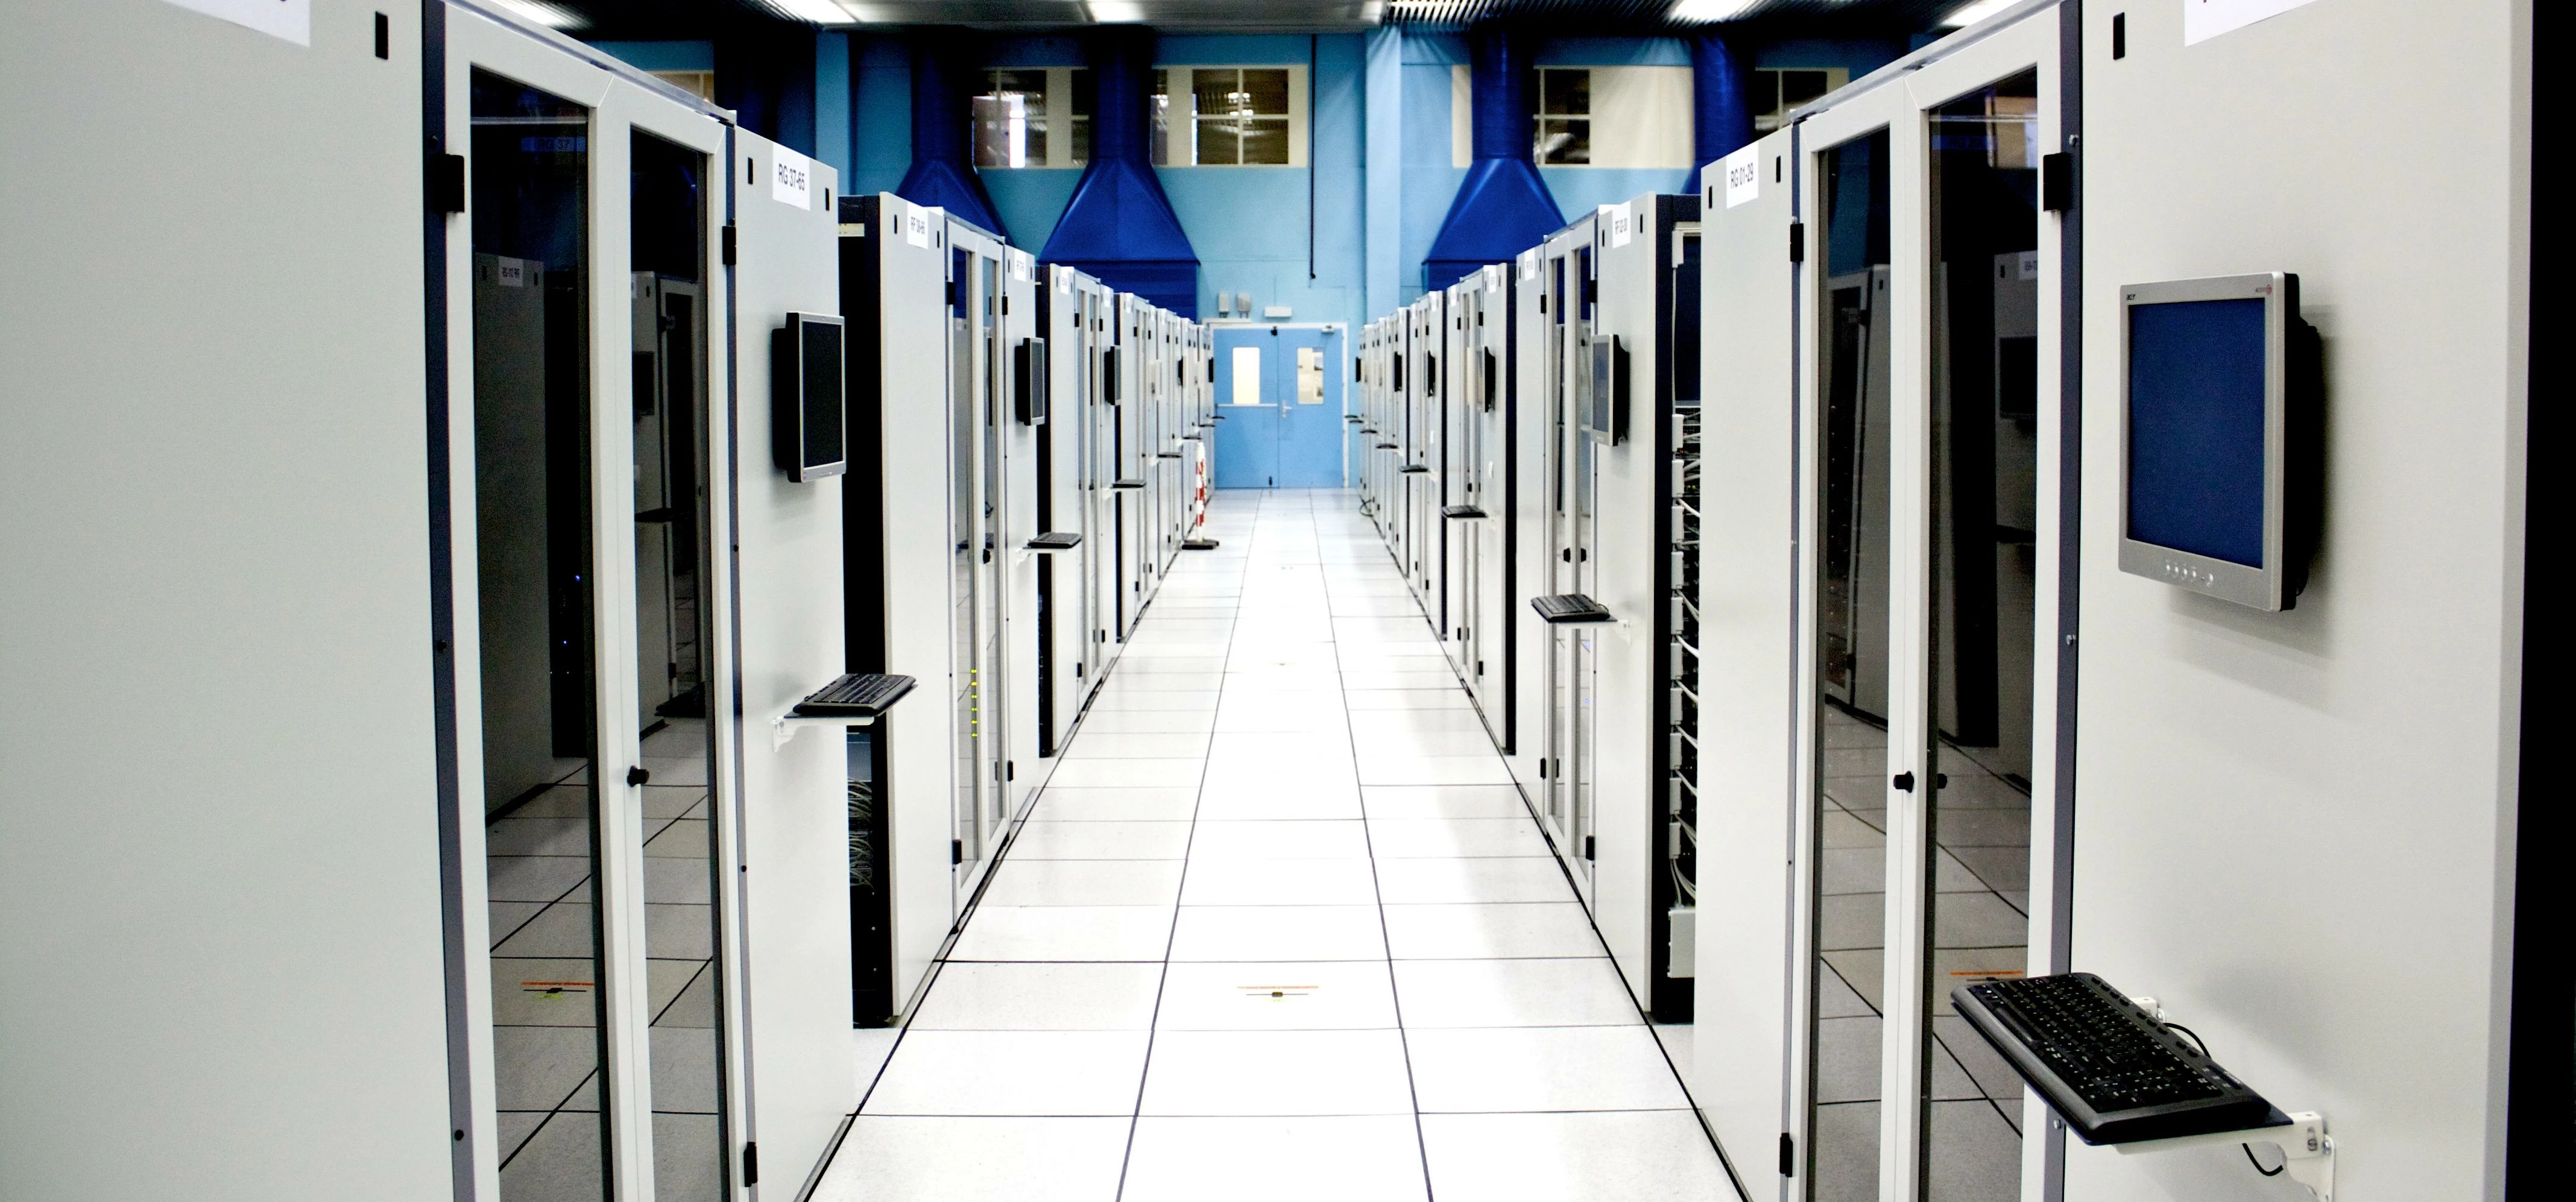 Server room at CERN